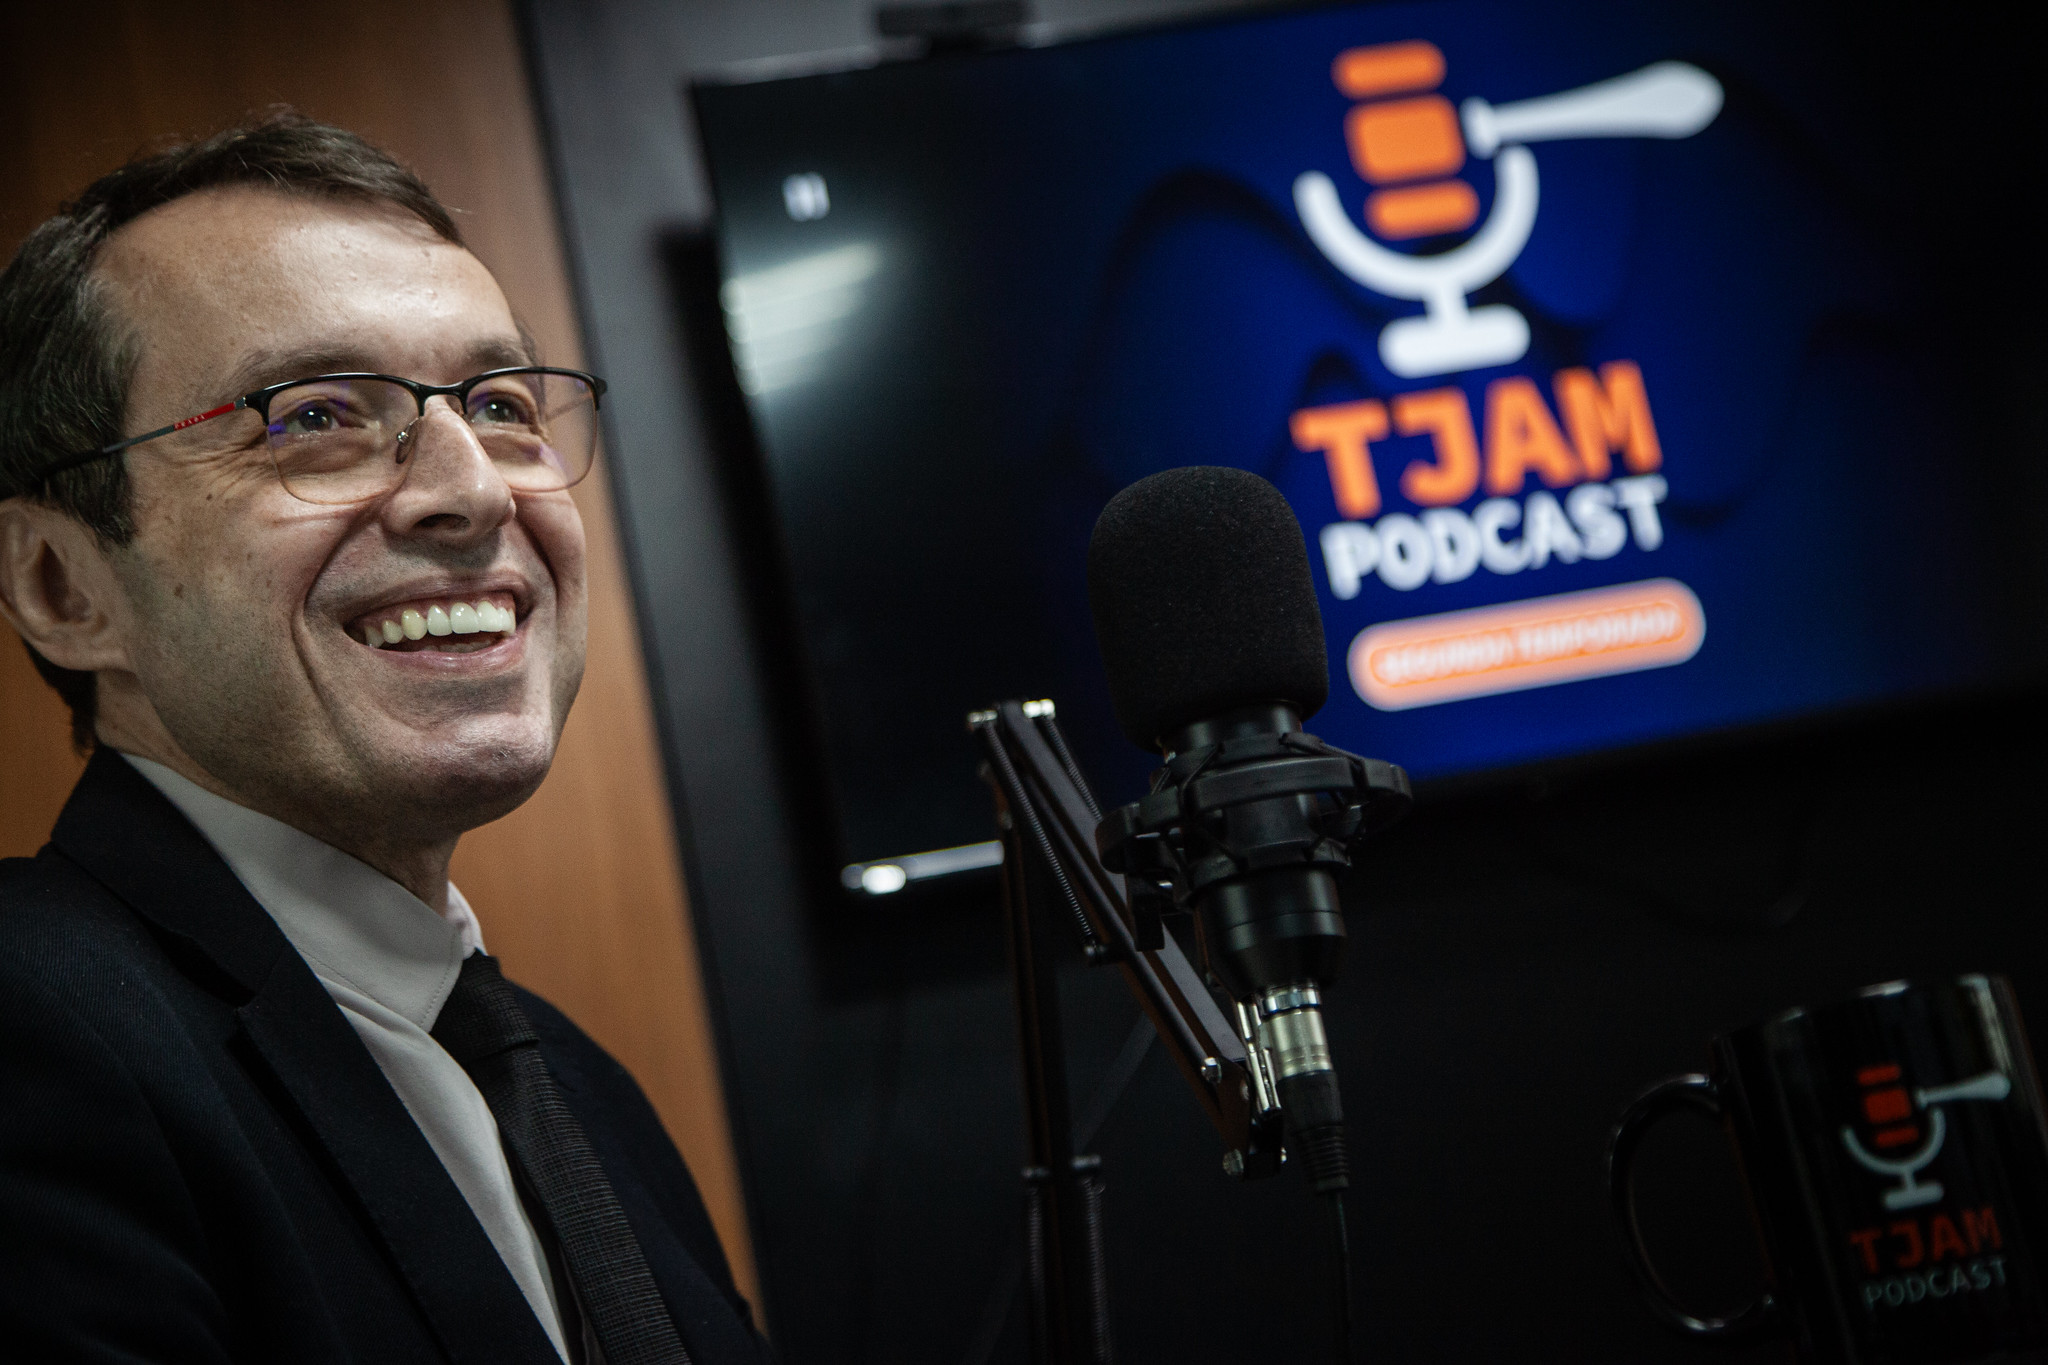 Comemorando seu primeiro ano, programa “TJAM Podcast” traz como entrevistado o desembargador Erick Linhares do Tribunal de Justiça de Roraima